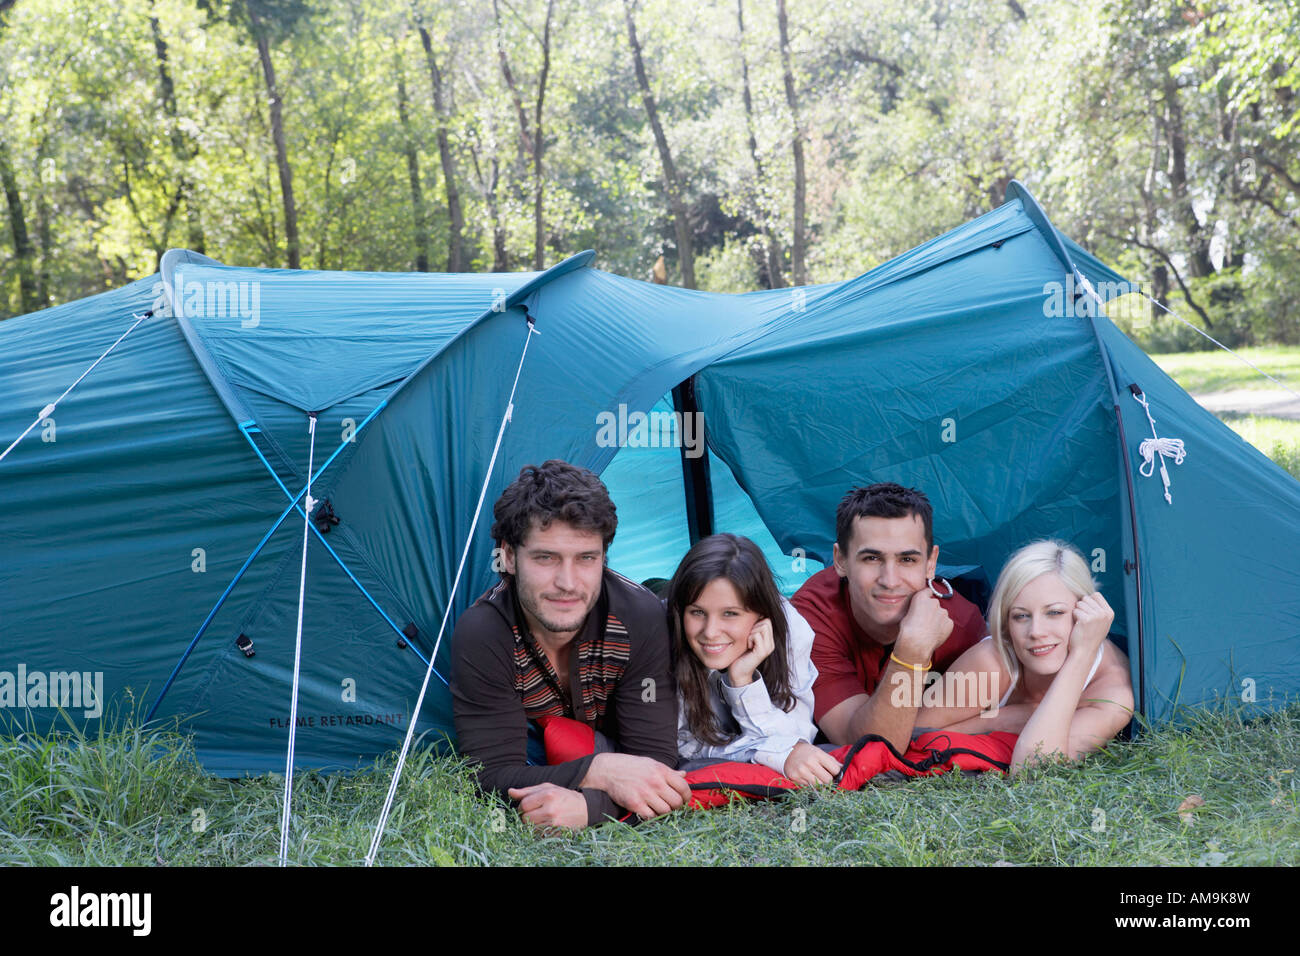 Look at the camp. Палатки на несколько человек. Палатка на четверых человек. Четыре человека в палатке. Палатка на 4 человека.